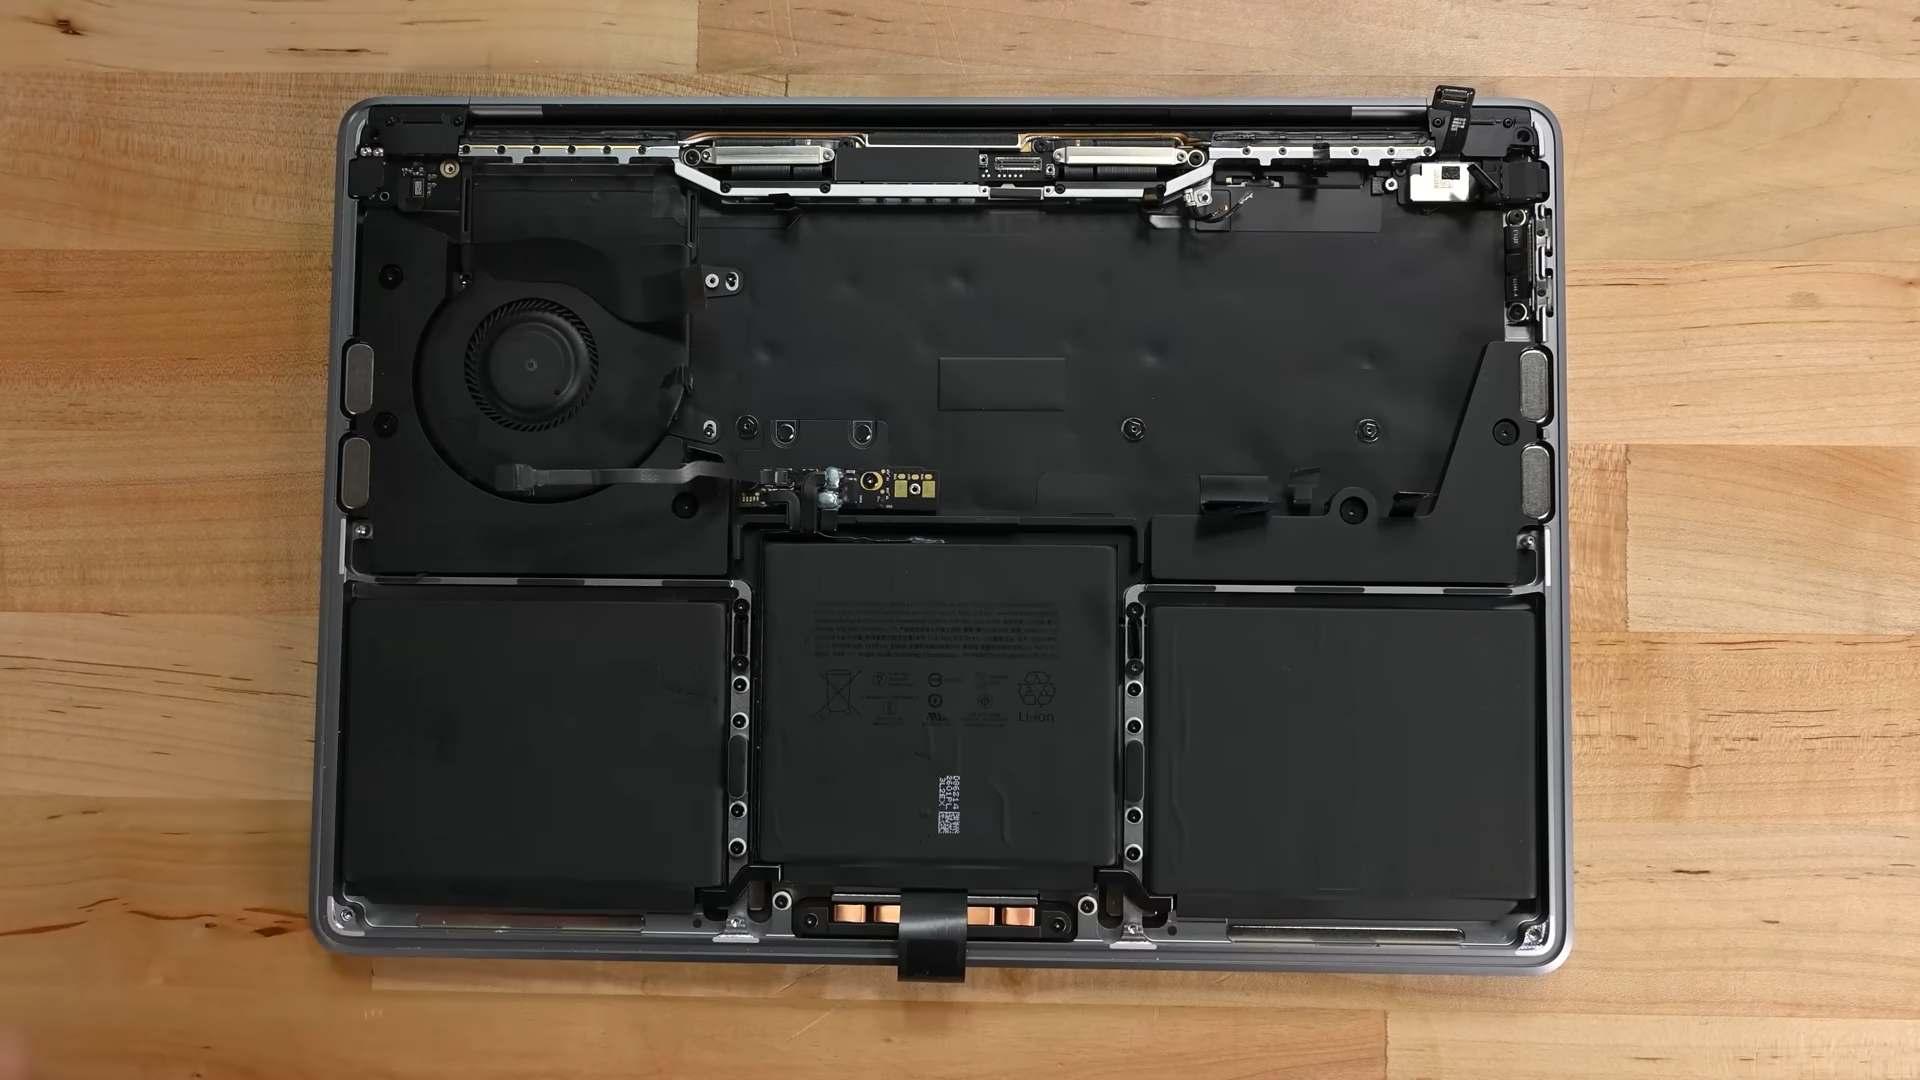 MacBook Pro 13 inch với M2, thấy nó gần giống với M1